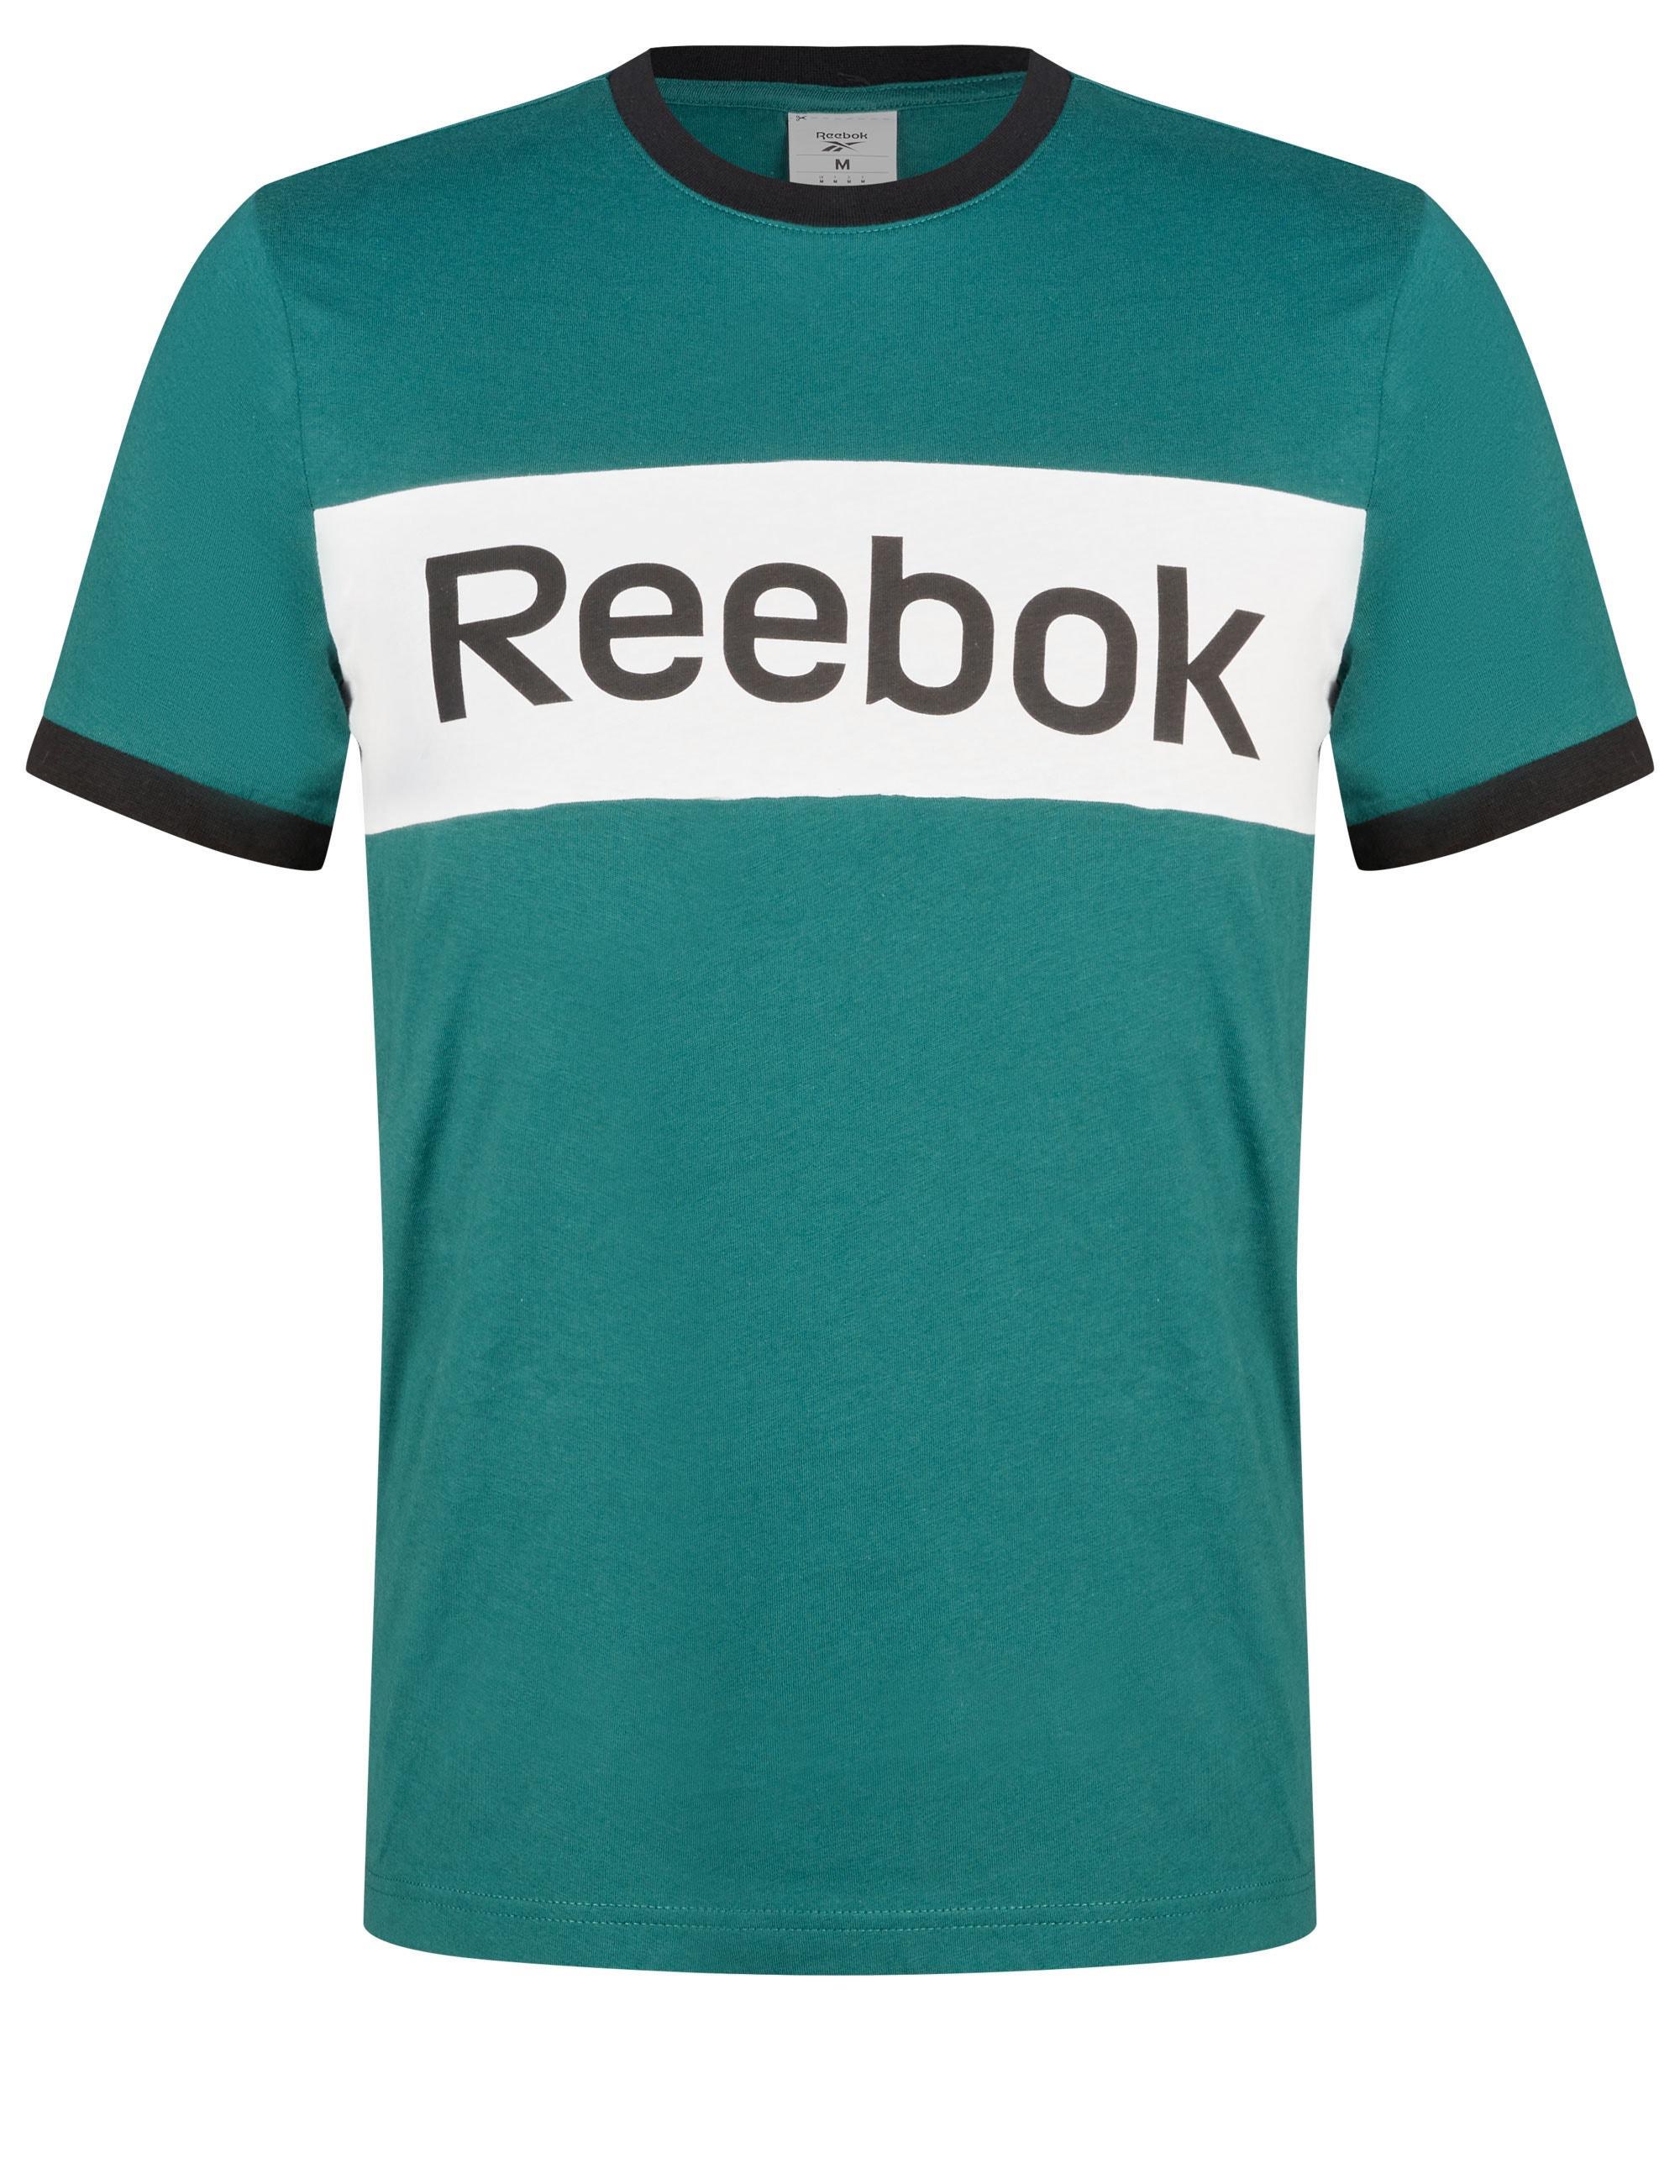 Reebok - Tops - Mens Short Sleeve Blocked Tee